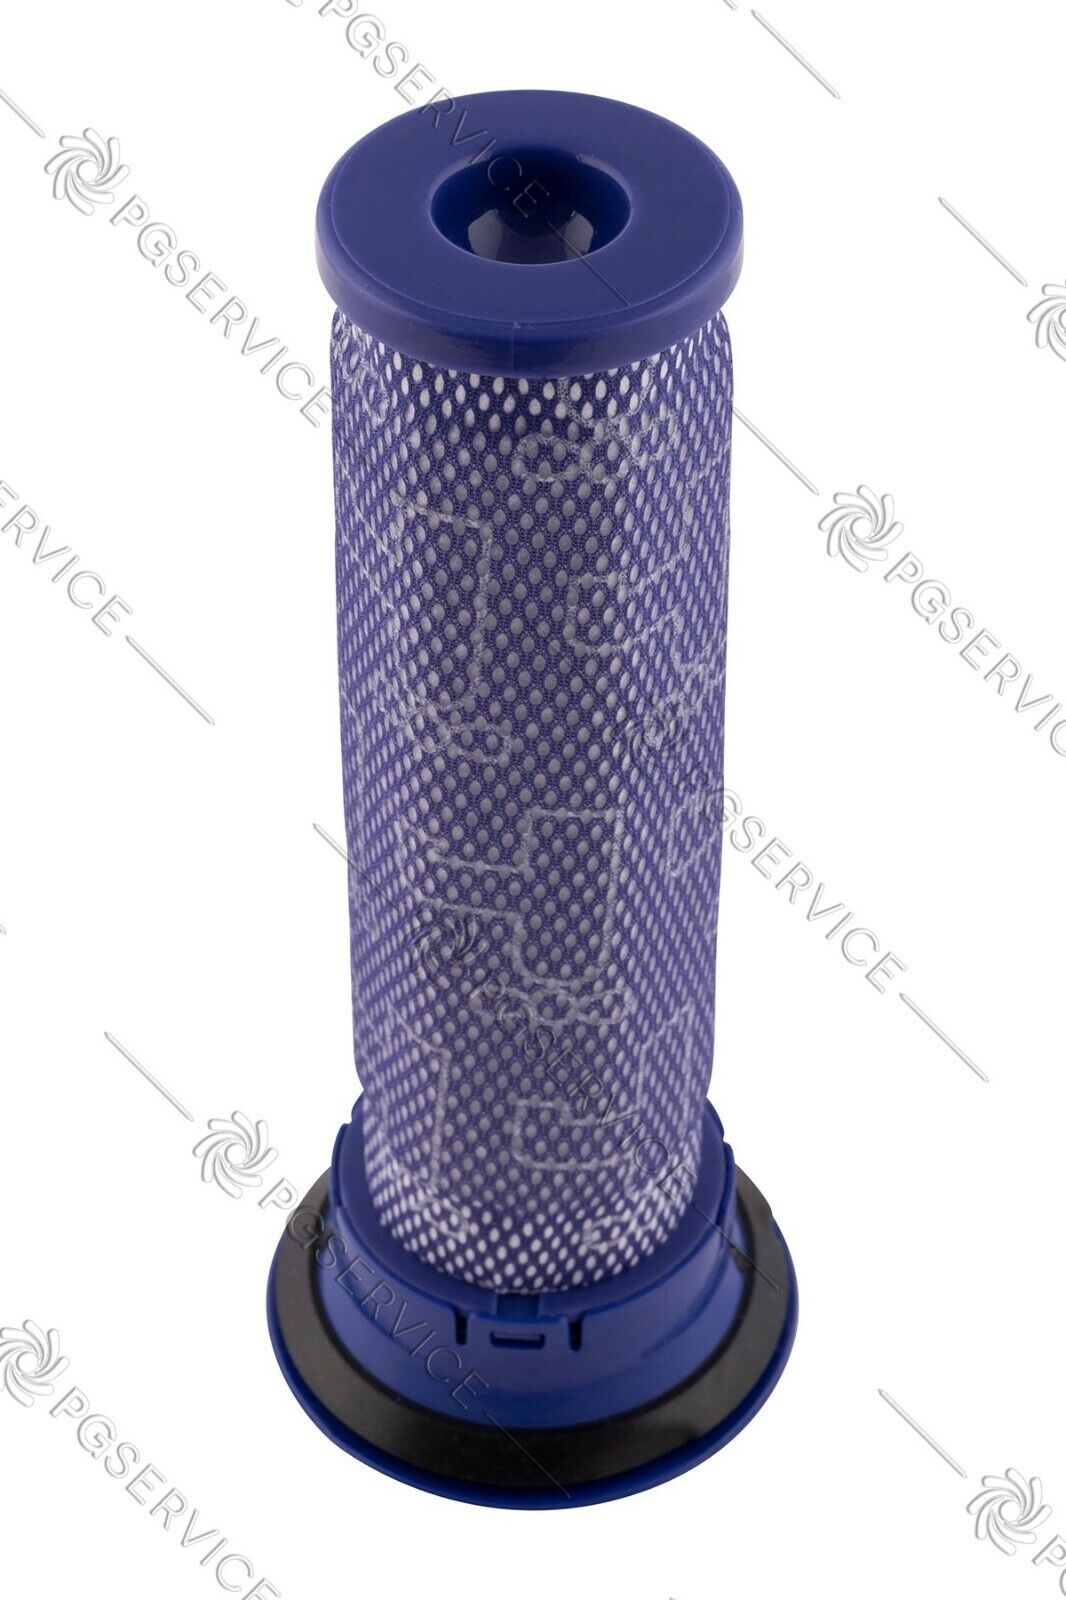 Filtro serbatoio cilindro lavabile aspirapolvere Dyson DC36 DC46 Allergy Parquet